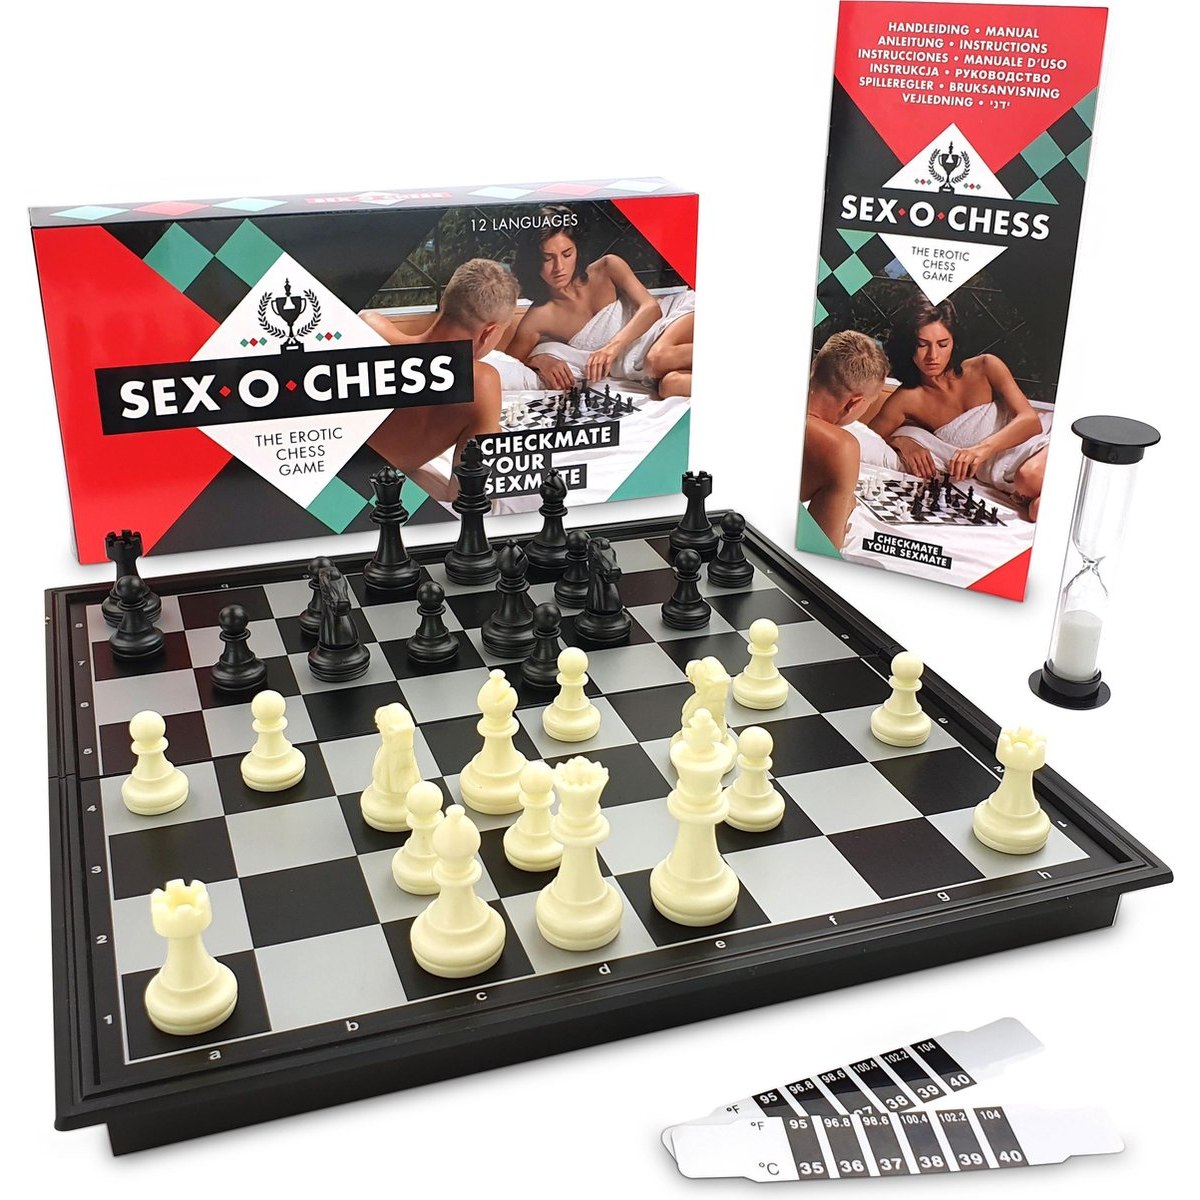 Эротические шахматы «White Label Sex-O-Chess», увлекательная игра, с необычными эротическими сюрпризами, от White label E30563, 145334 - купить в СексФист